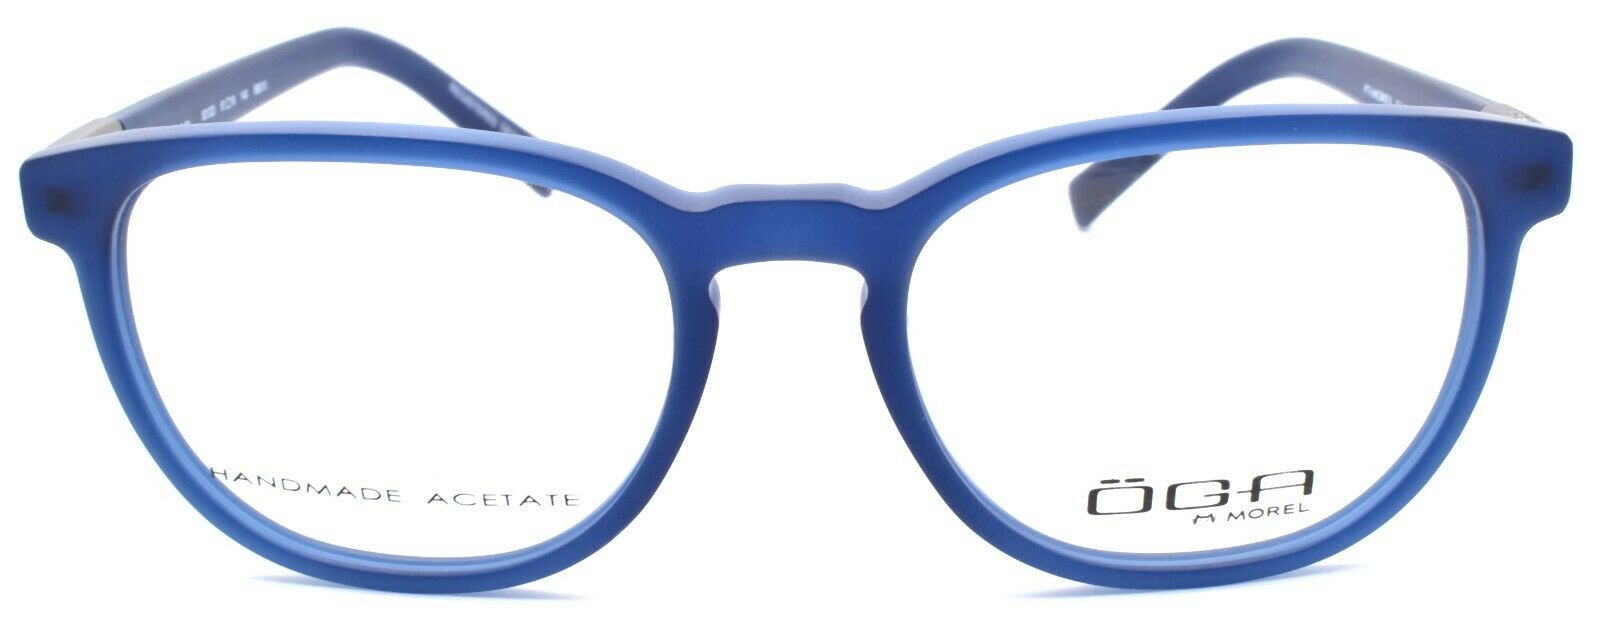 2-OGA by Morel 8312O BB010 Men's Eyeglasses Frames 51-18-140 Blue-3604770905649-IKSpecs